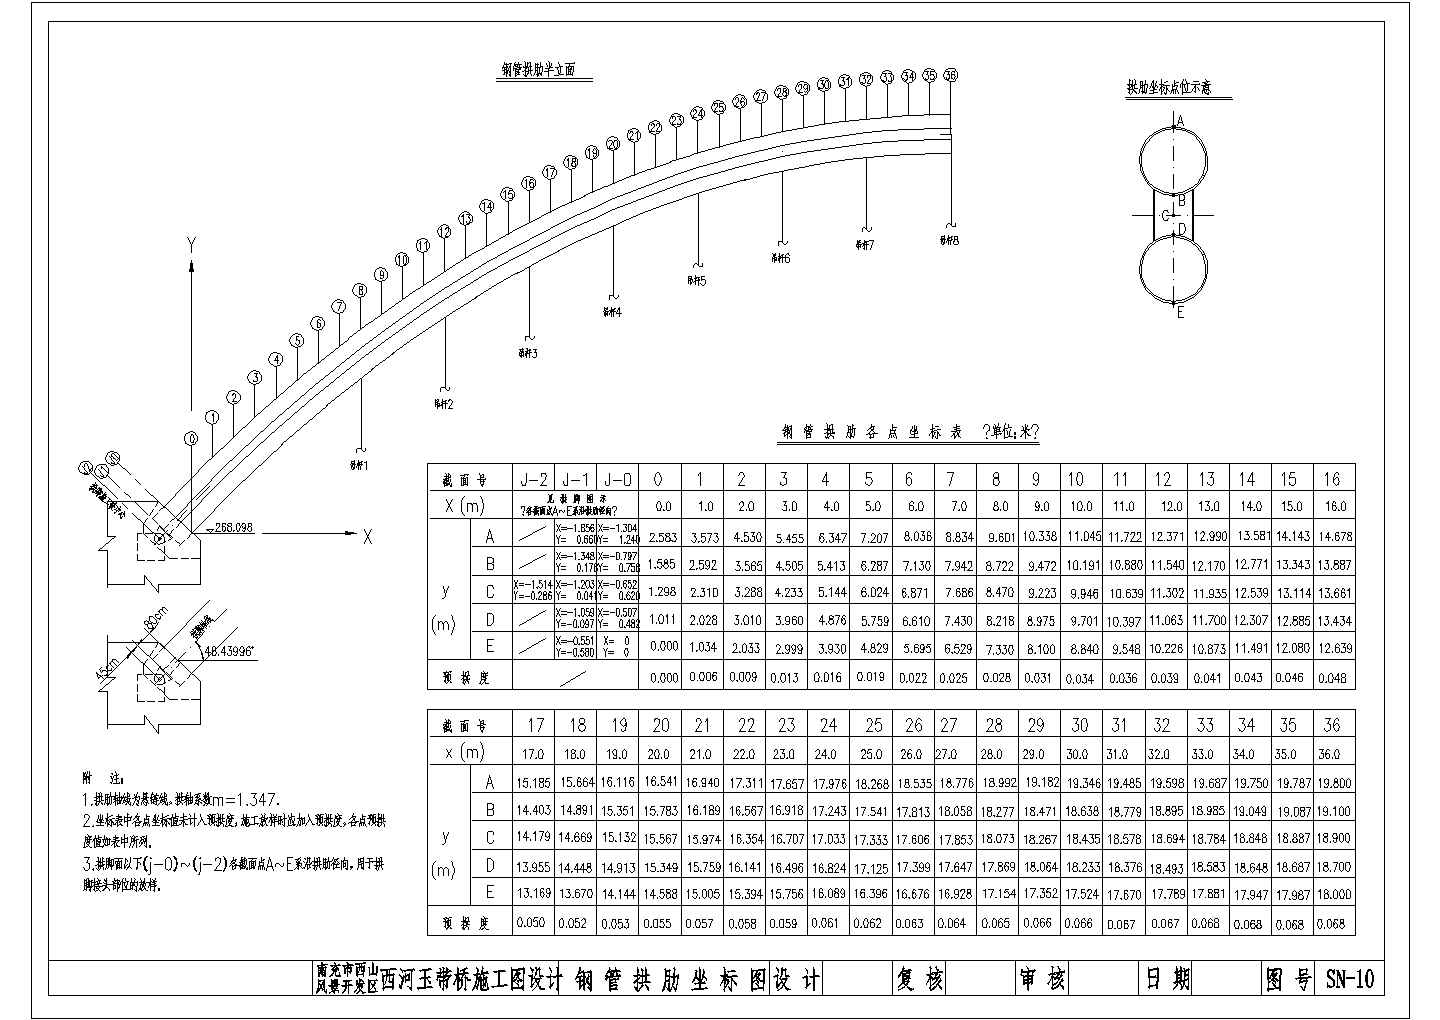 某河玉带桥1-72米中承式钢管拱拱肋坐标CAD构造平面设计图